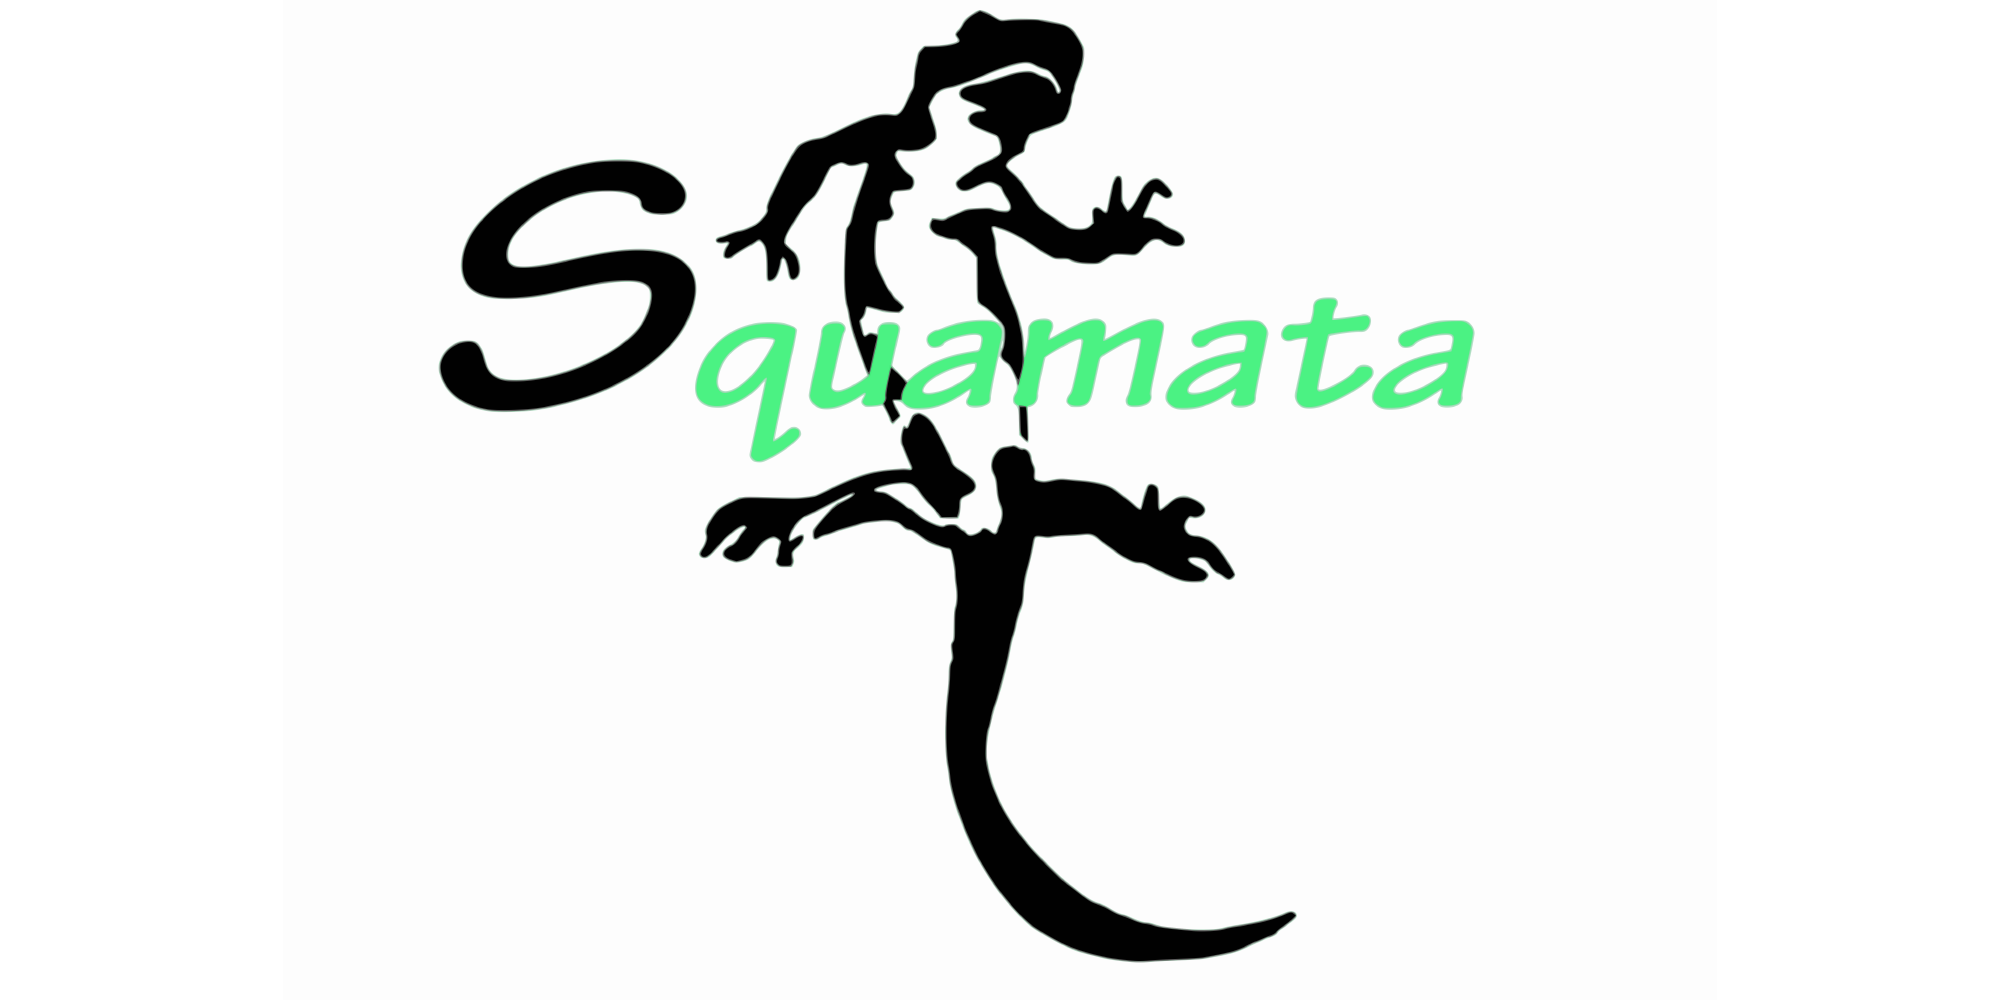 Squamata